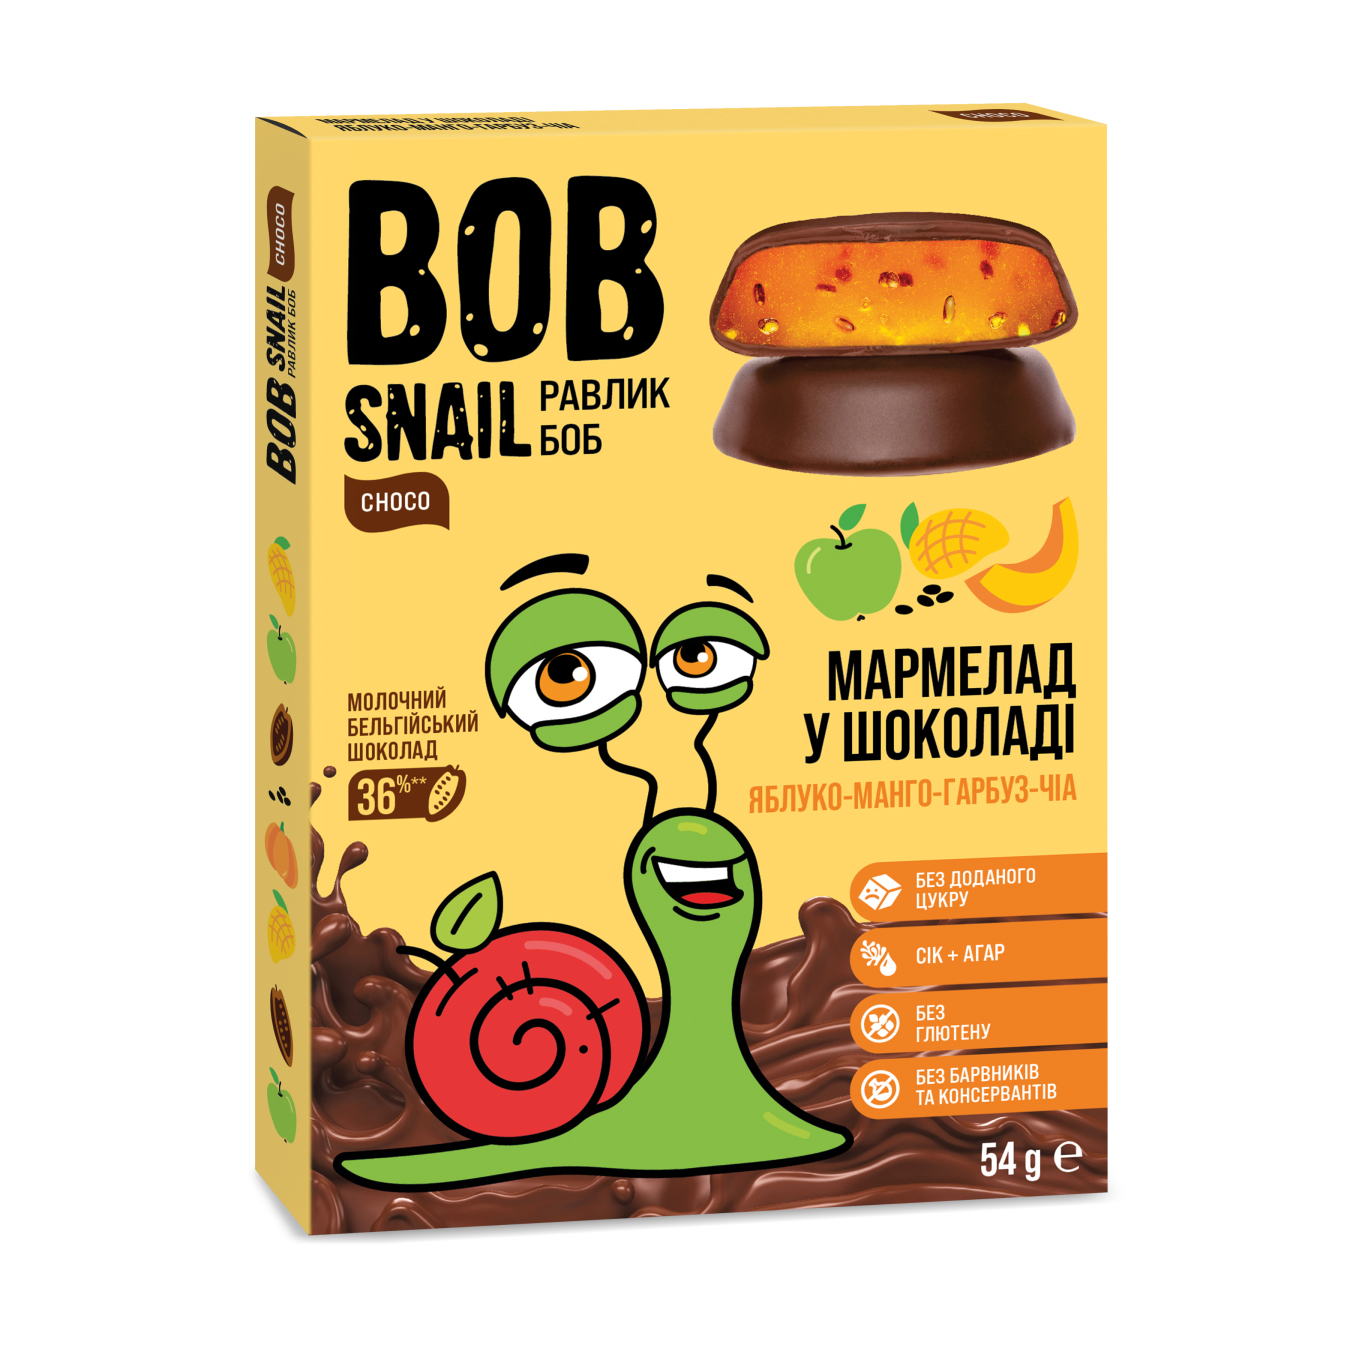 Мармелад Bob Snail яблоко-манго-тыква-чиа без сахара 54г